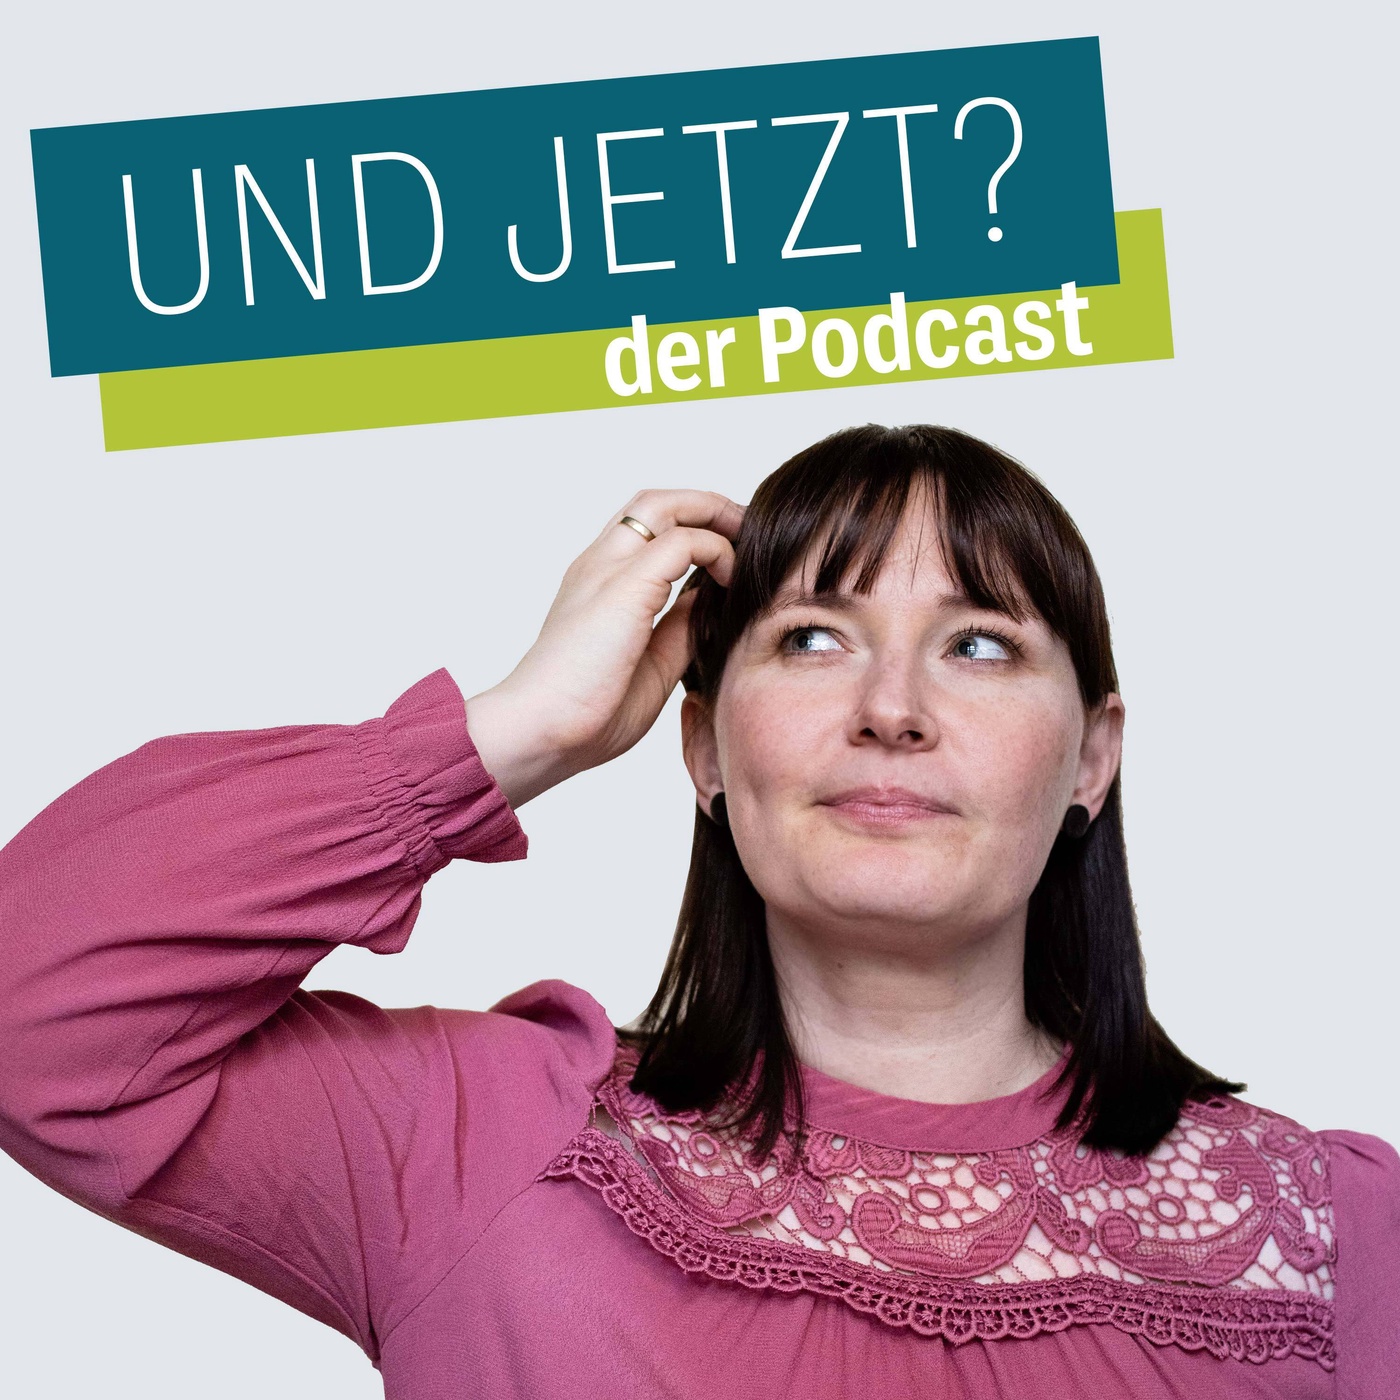 UND JETZT - der Podcast für mehr Selbstsicherheit und persönliches Wachstum